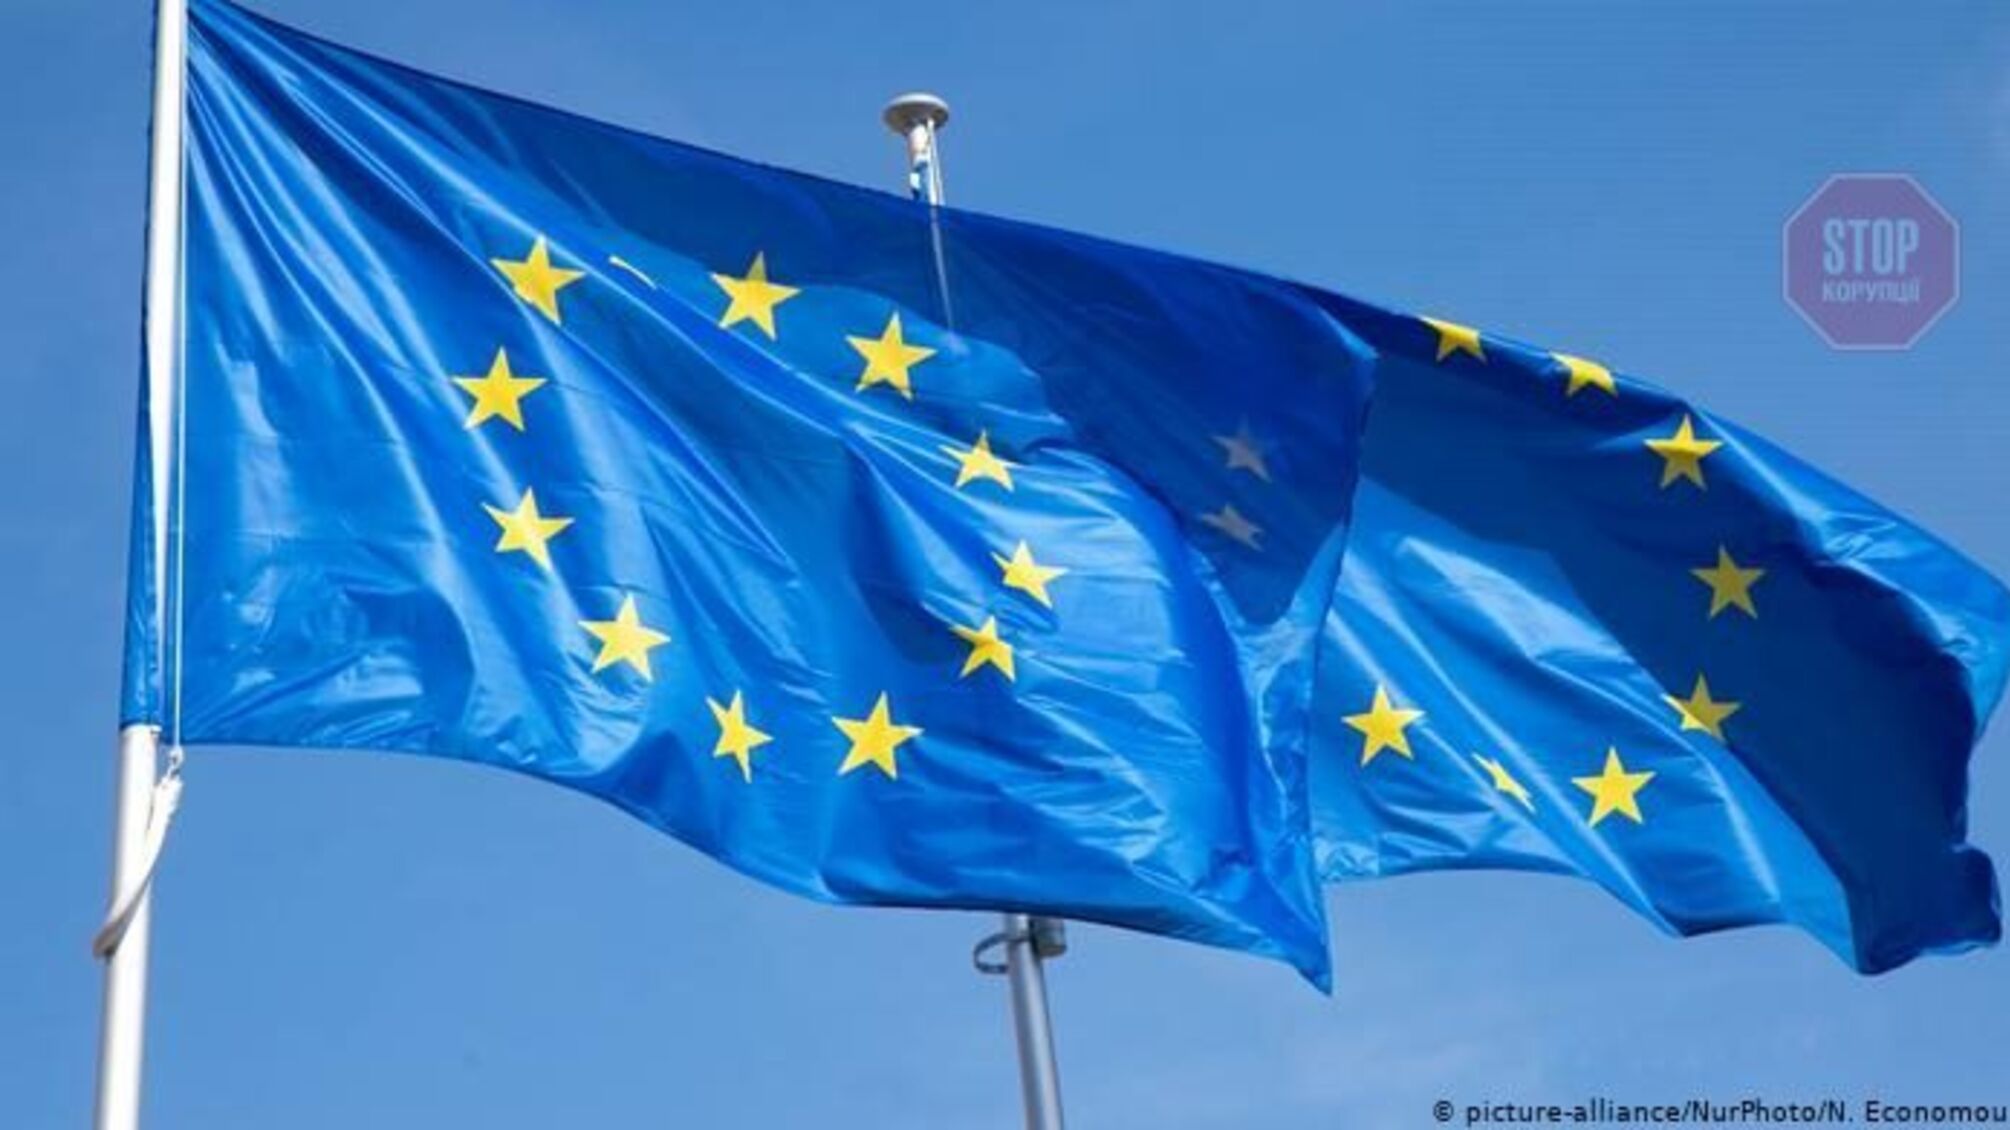 ЕС будет жестко реагировать на любую агрессию против Украины, - президент Еврокомиссии